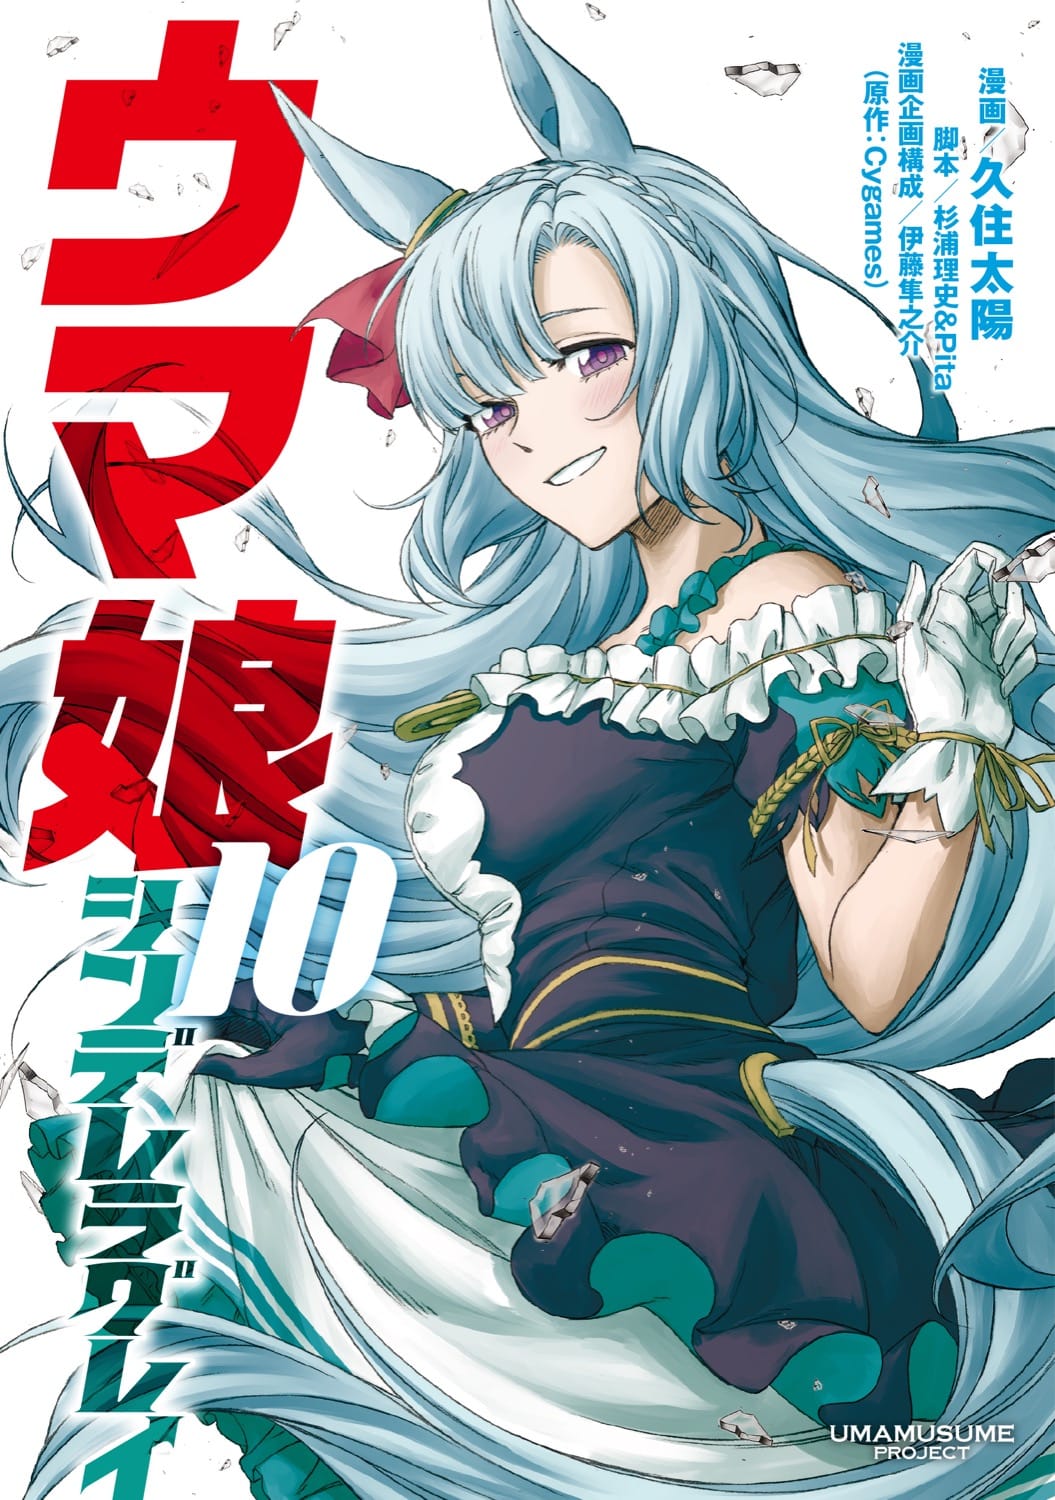 「ウマ娘 シンデレラグレイ」第10巻 2023年3月17日発売!